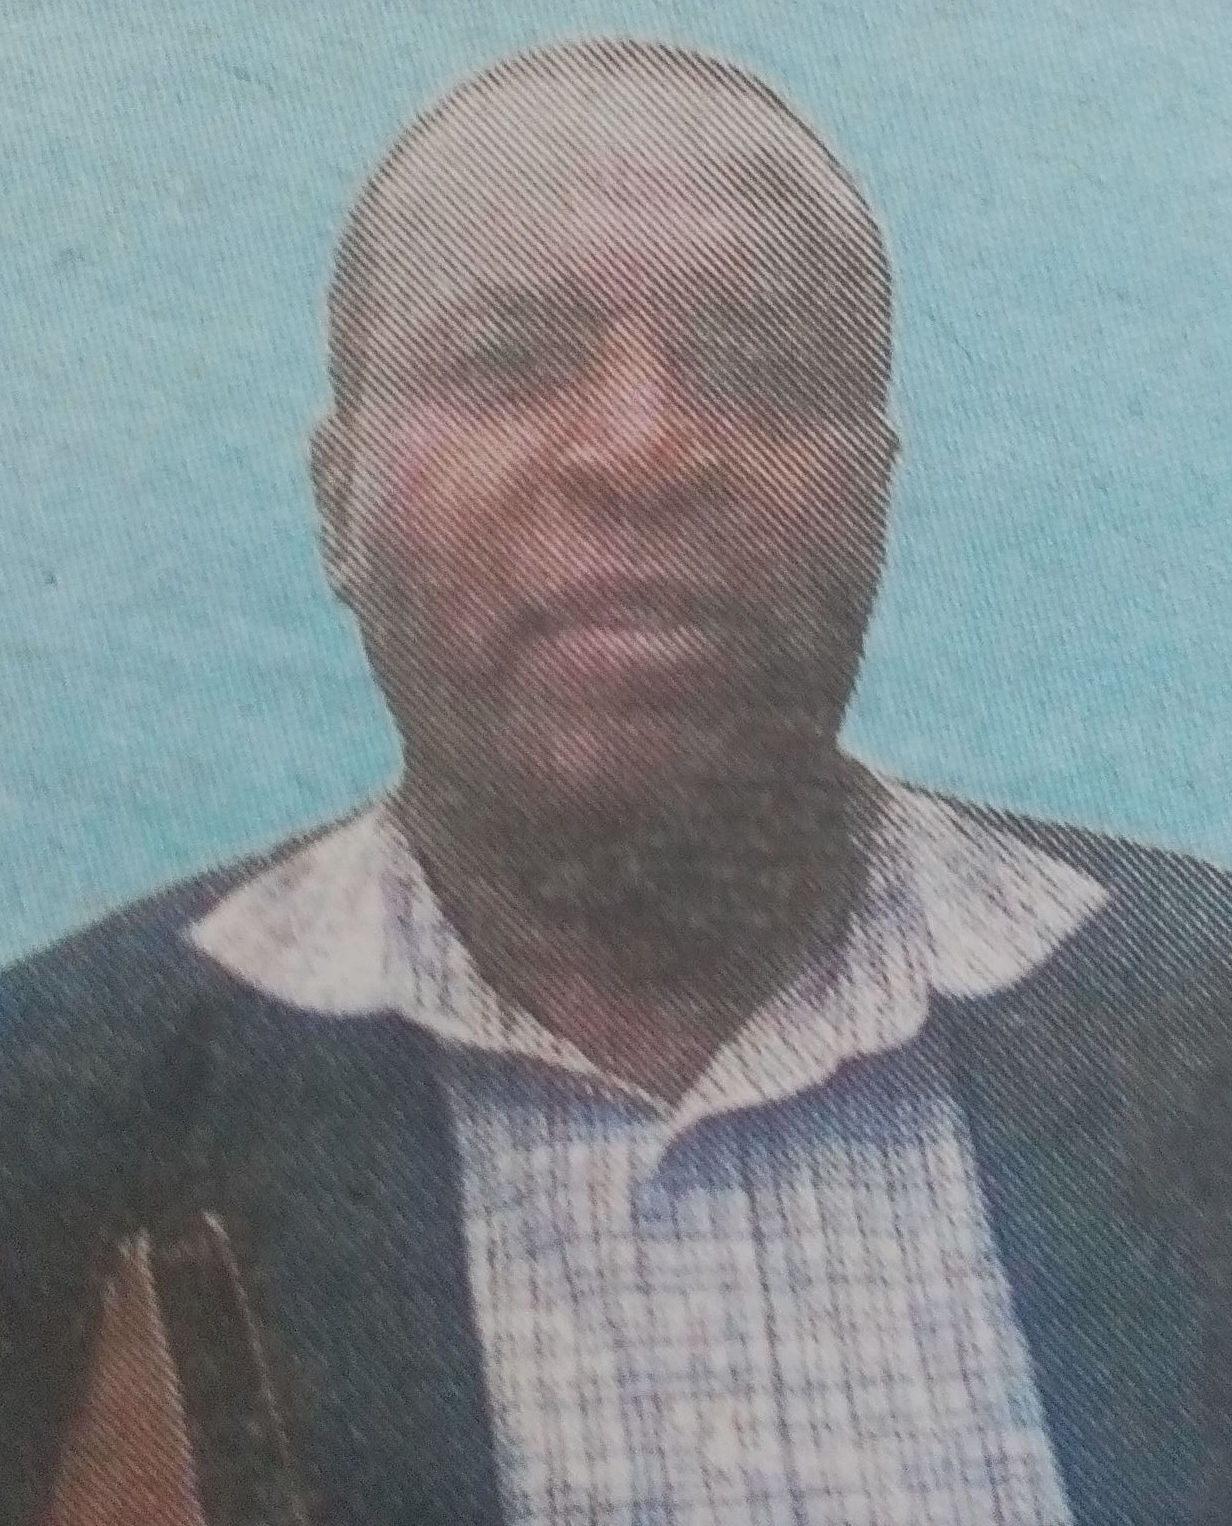 Obituary Image of Joseph Maweu Matheka